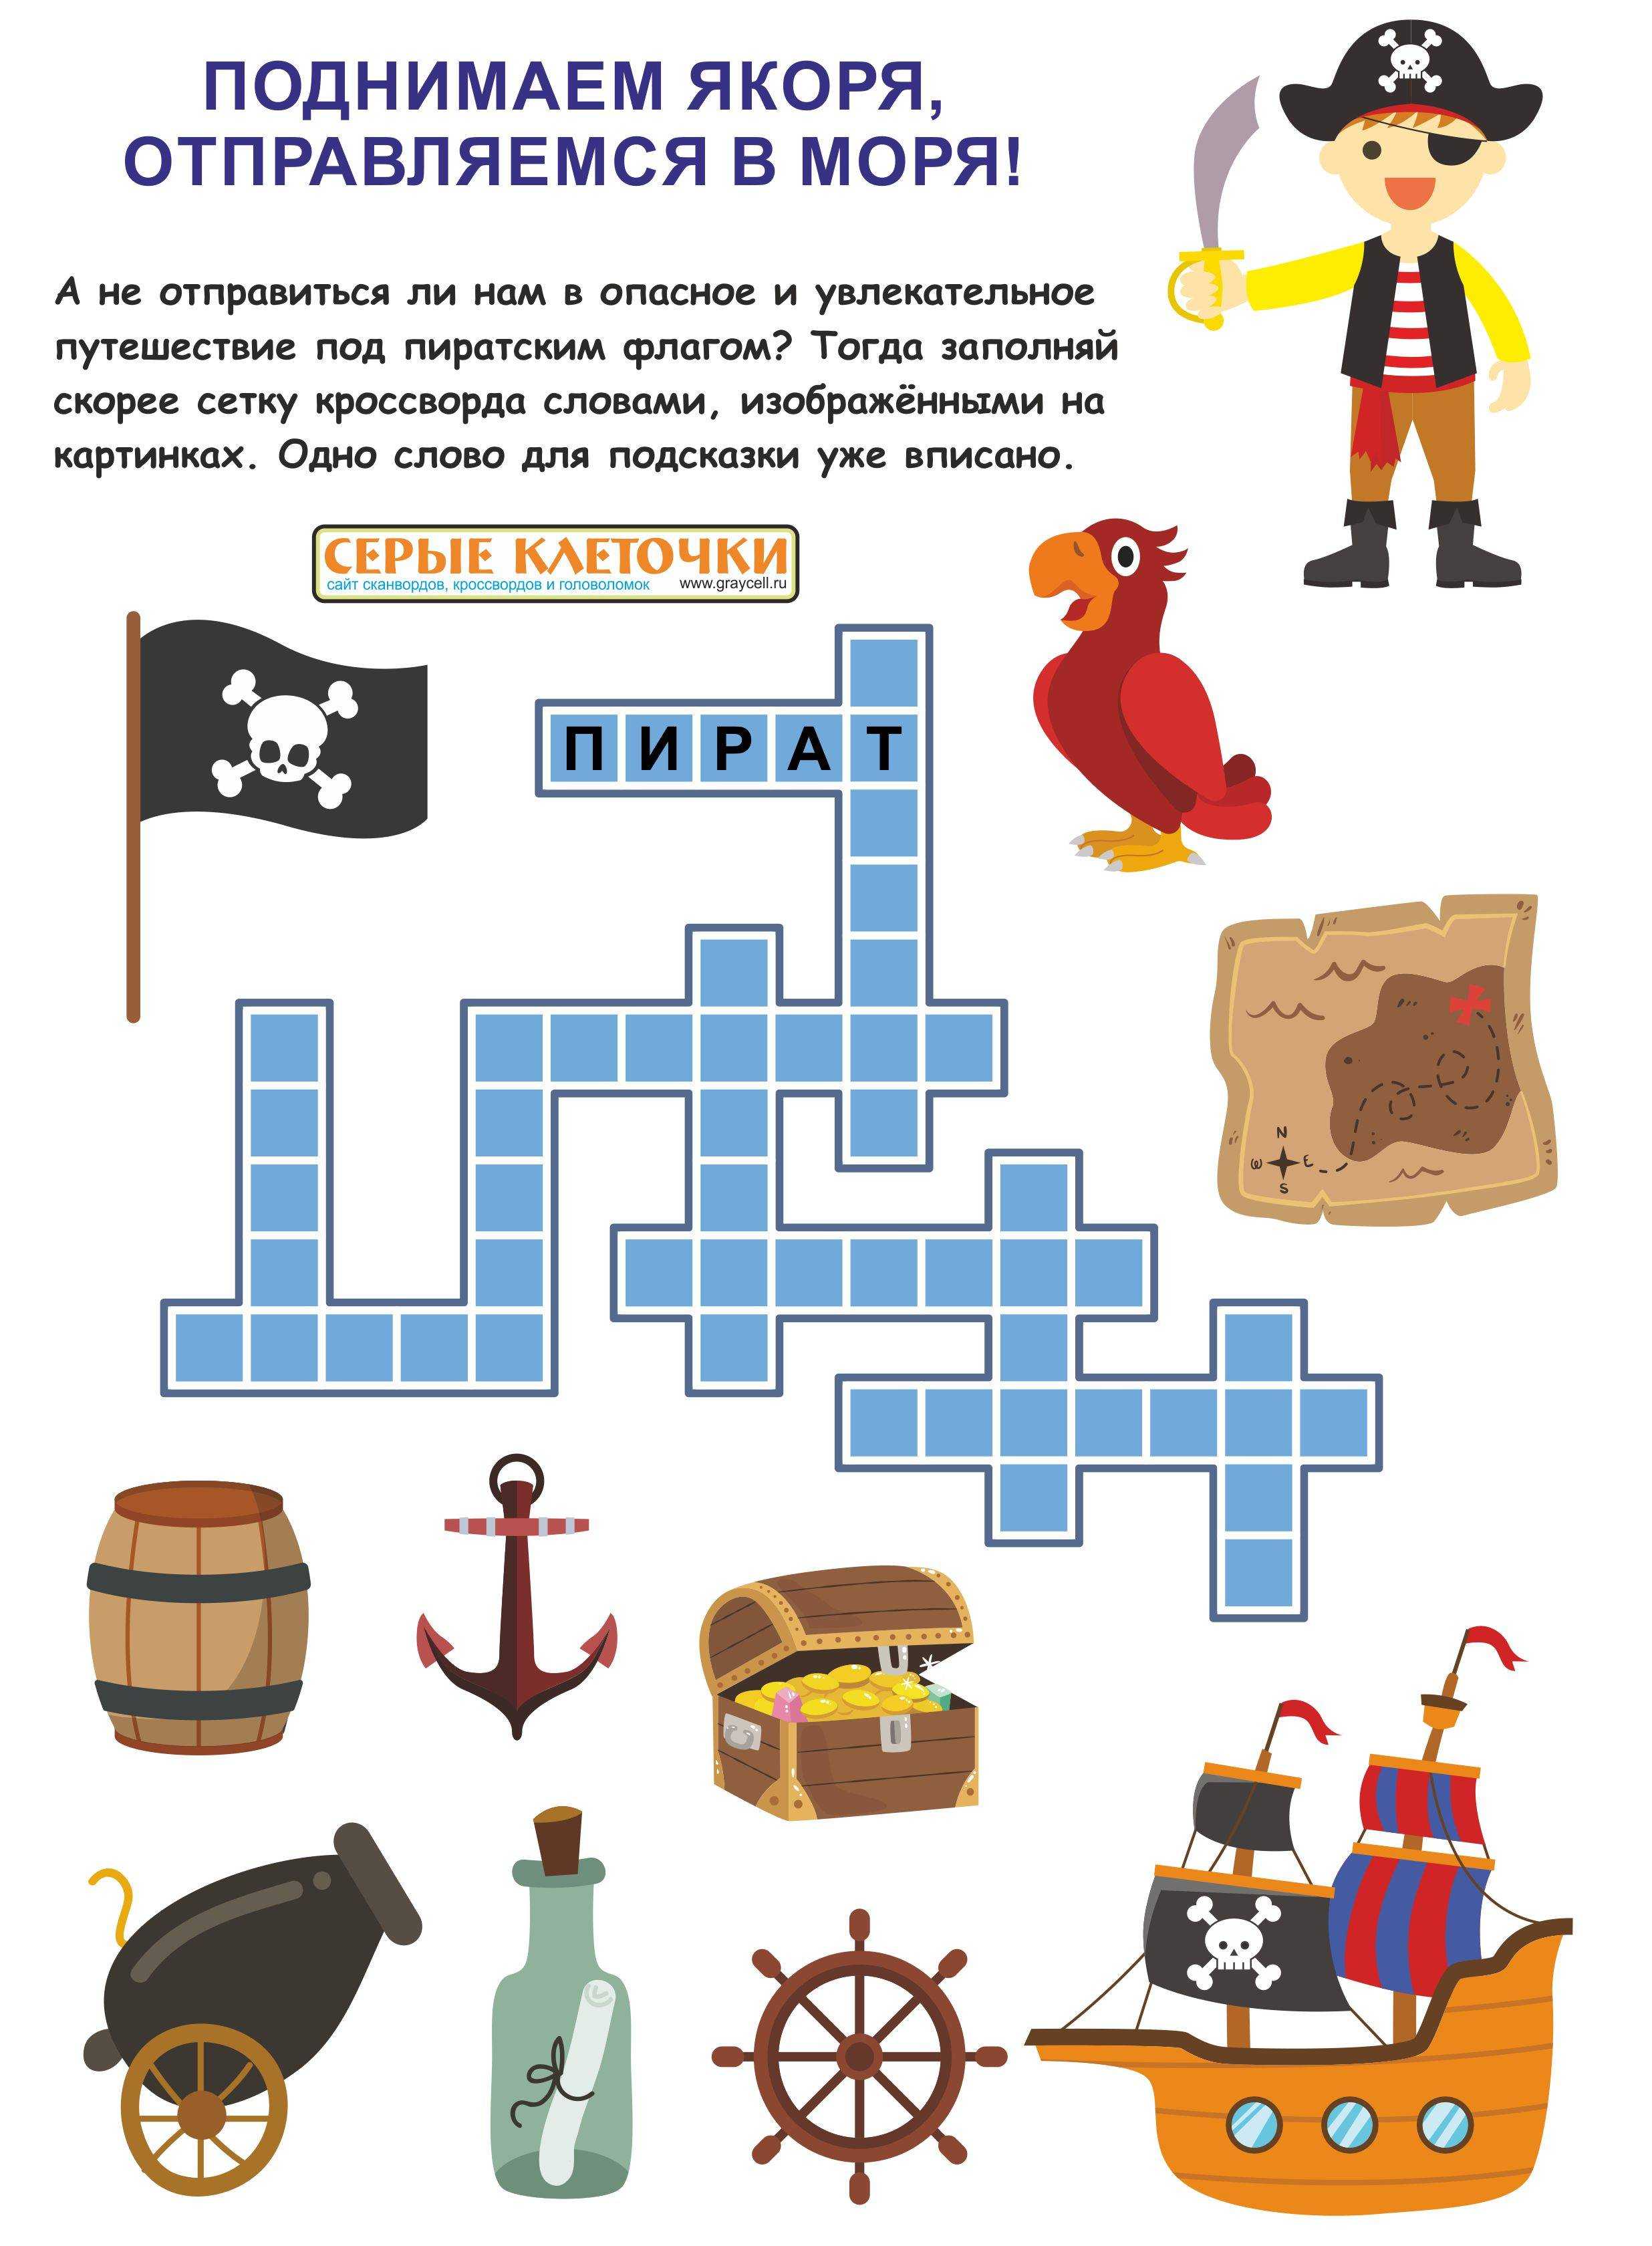 25 интересных пиратских загадок для детей с ответами Начиная читать каждую строчку загадок, мы представляем себя пиратами Надев шляпу и повязав себе на глаз ленточку, собираемся строить плот и привязать пиратский флаг